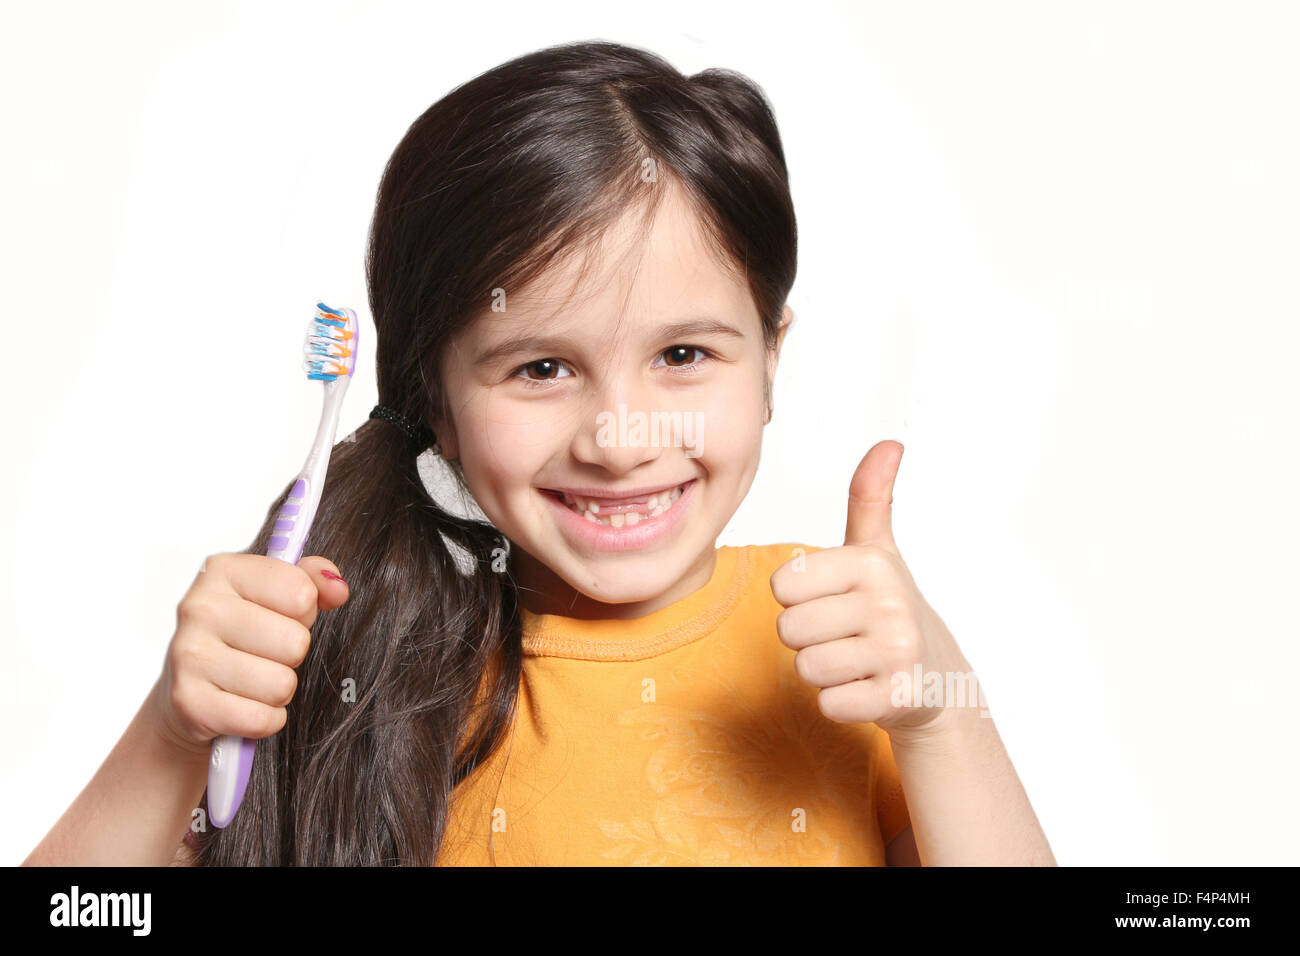 Sieben Jahres altes Mädchen zeigt großes Lächeln zeigt, fehlen die oberen Schneidezähne und halten eine Zahnbürste auf weißem Hintergrund Stockfoto